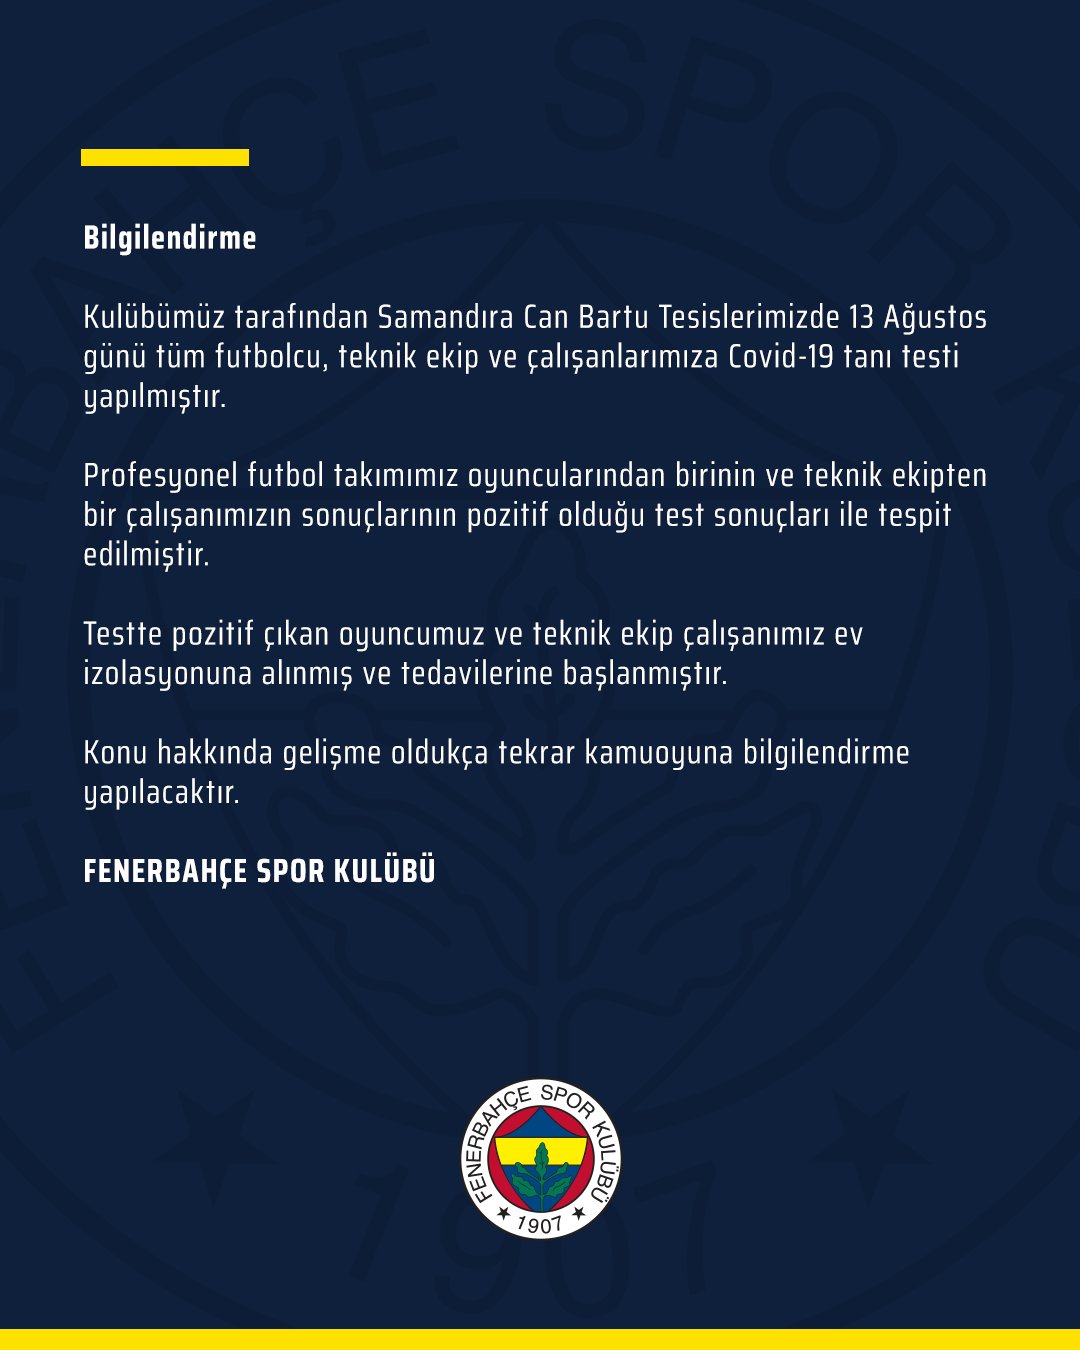 Fenerbahçe de iki kişinin koronavirüs testi pozitif çıktı #2